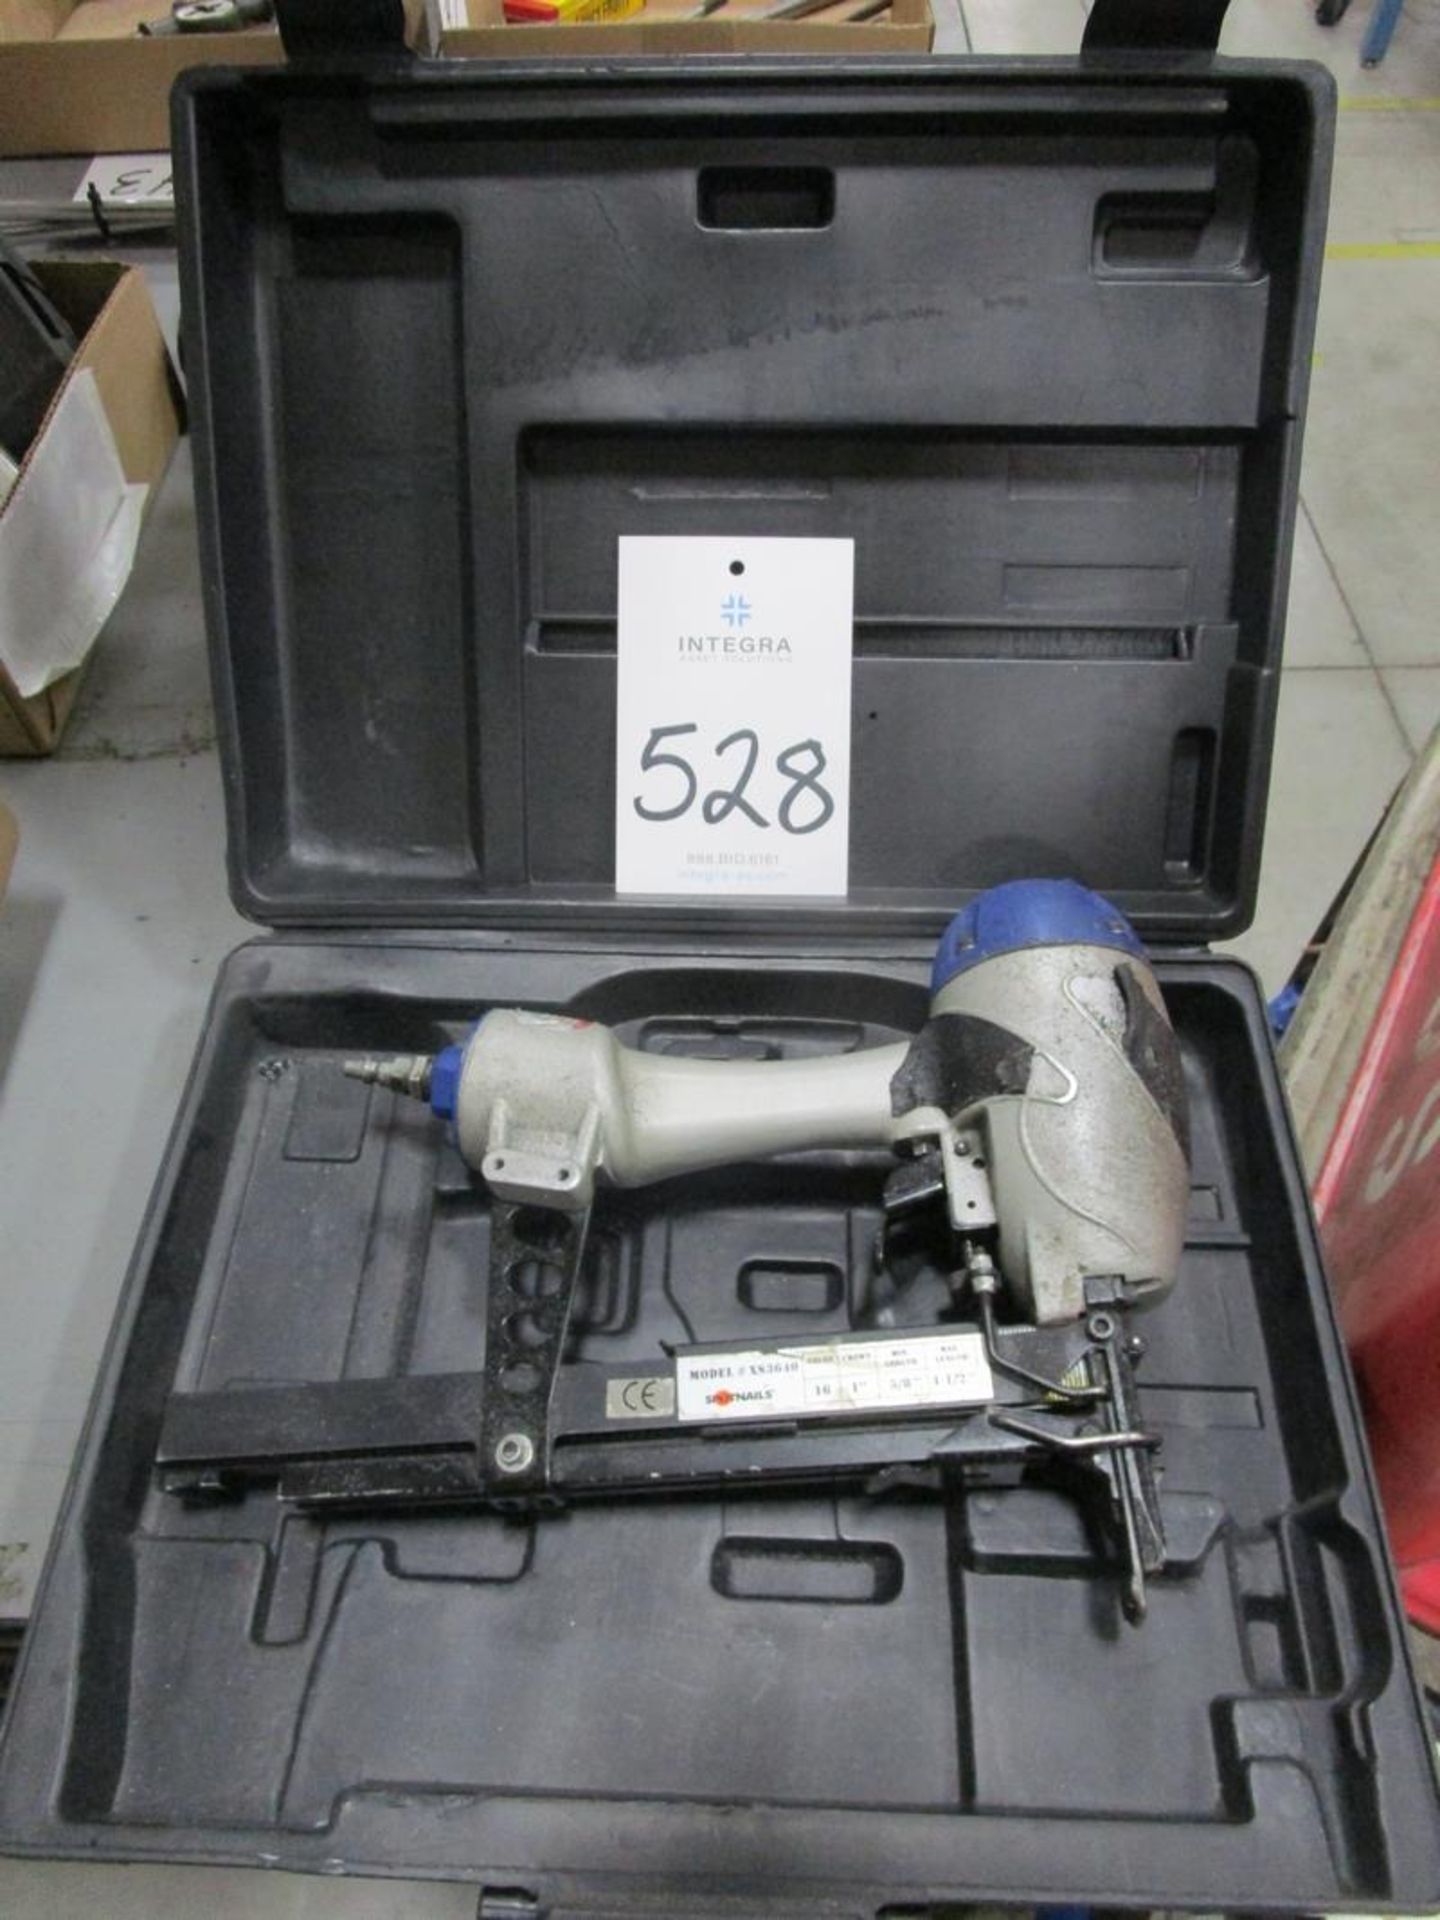 Spotnails XS3640 Pneumatic Staple Gun